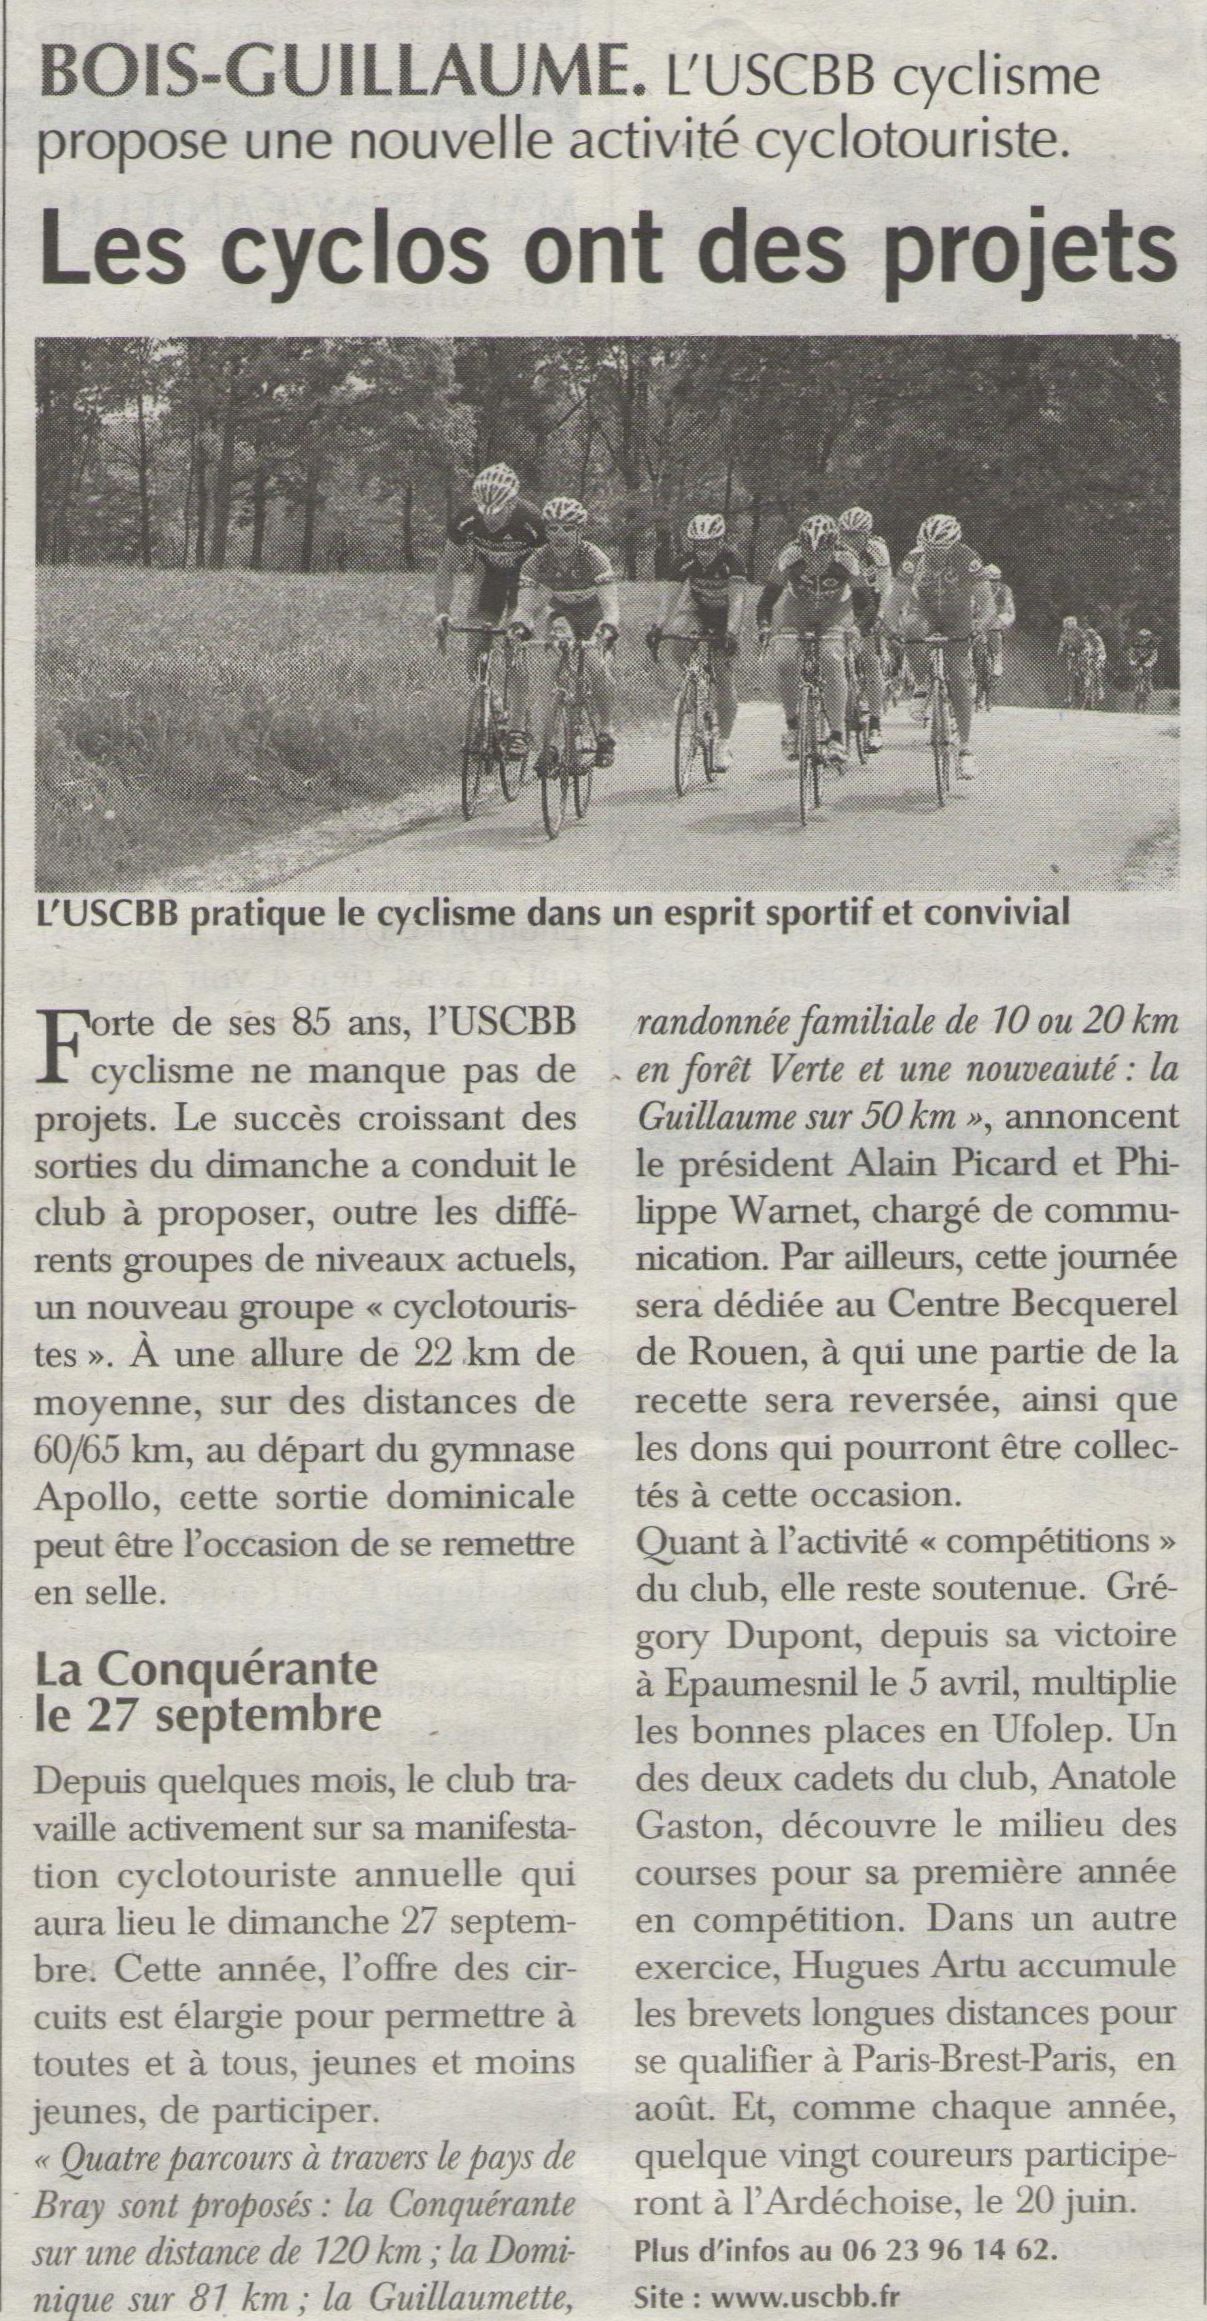 15 06 18 Paris Ndie USCBB Cyclisme